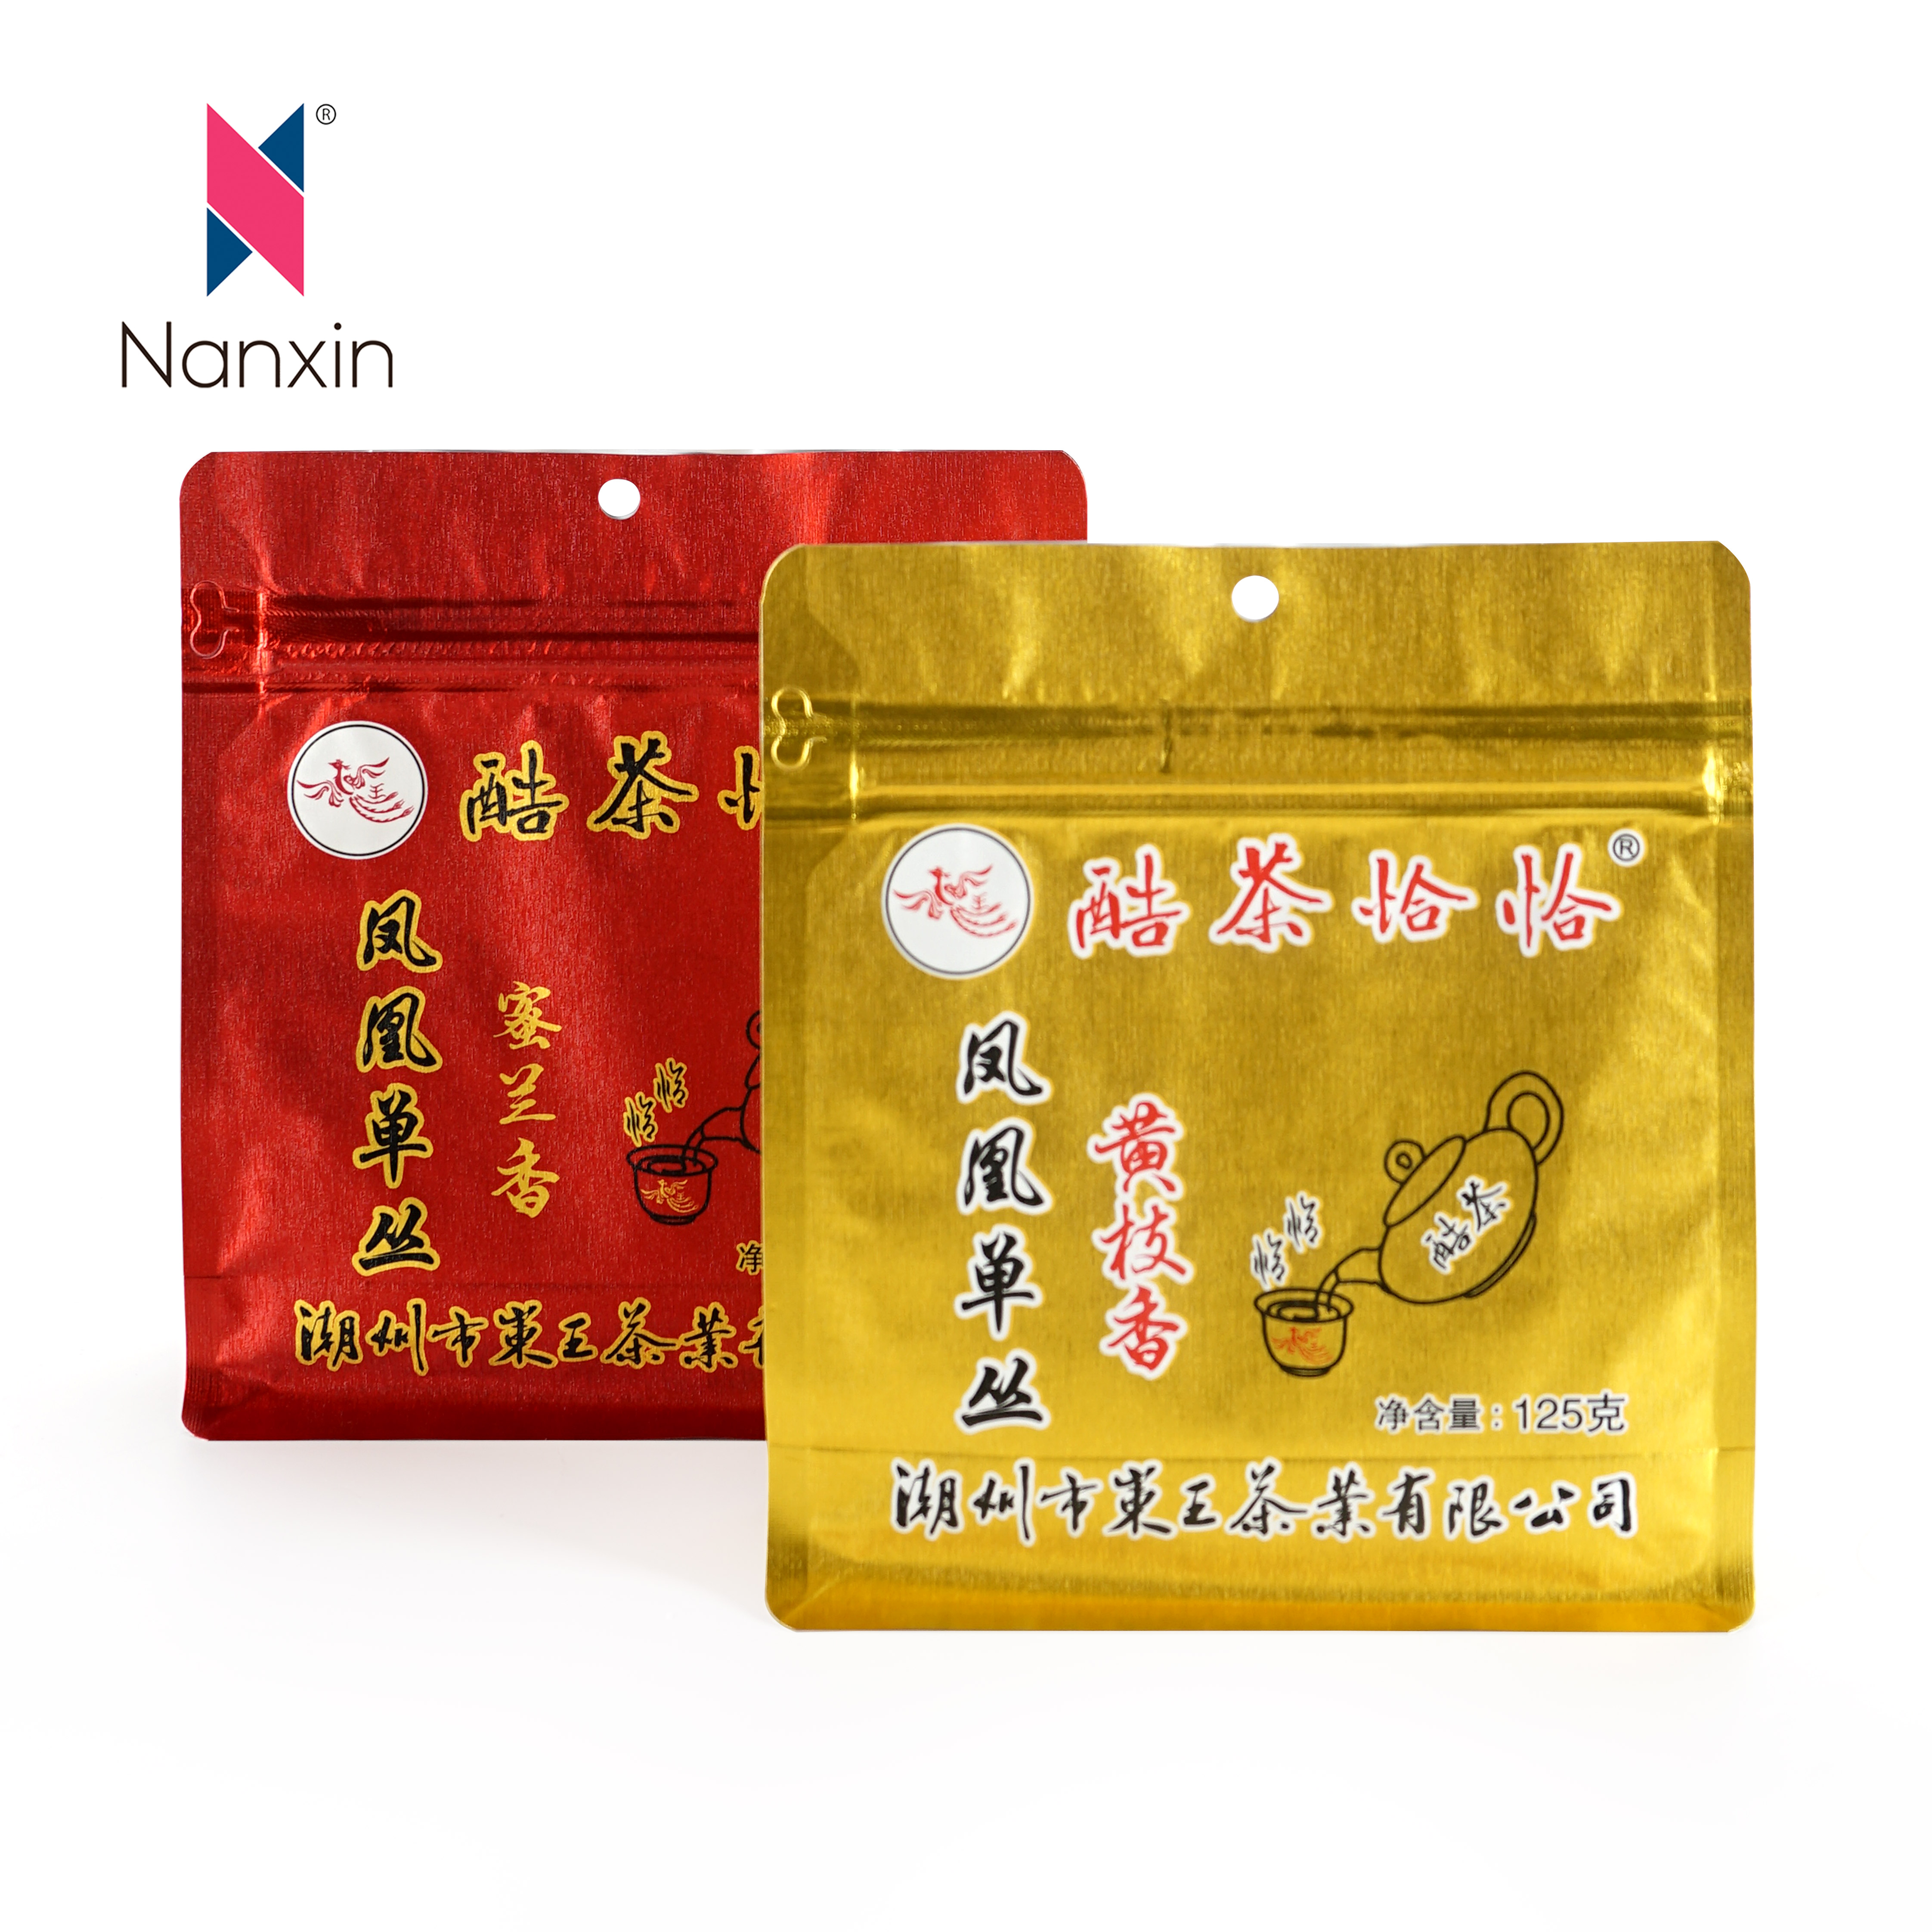 हॉट सेल प्लास्टिक मुद्रित फ्लैट बॉटम गोल्ड फिल्म चीनी चाय धातु 500 ग्राम खाद्य पैकेजिंग बैग